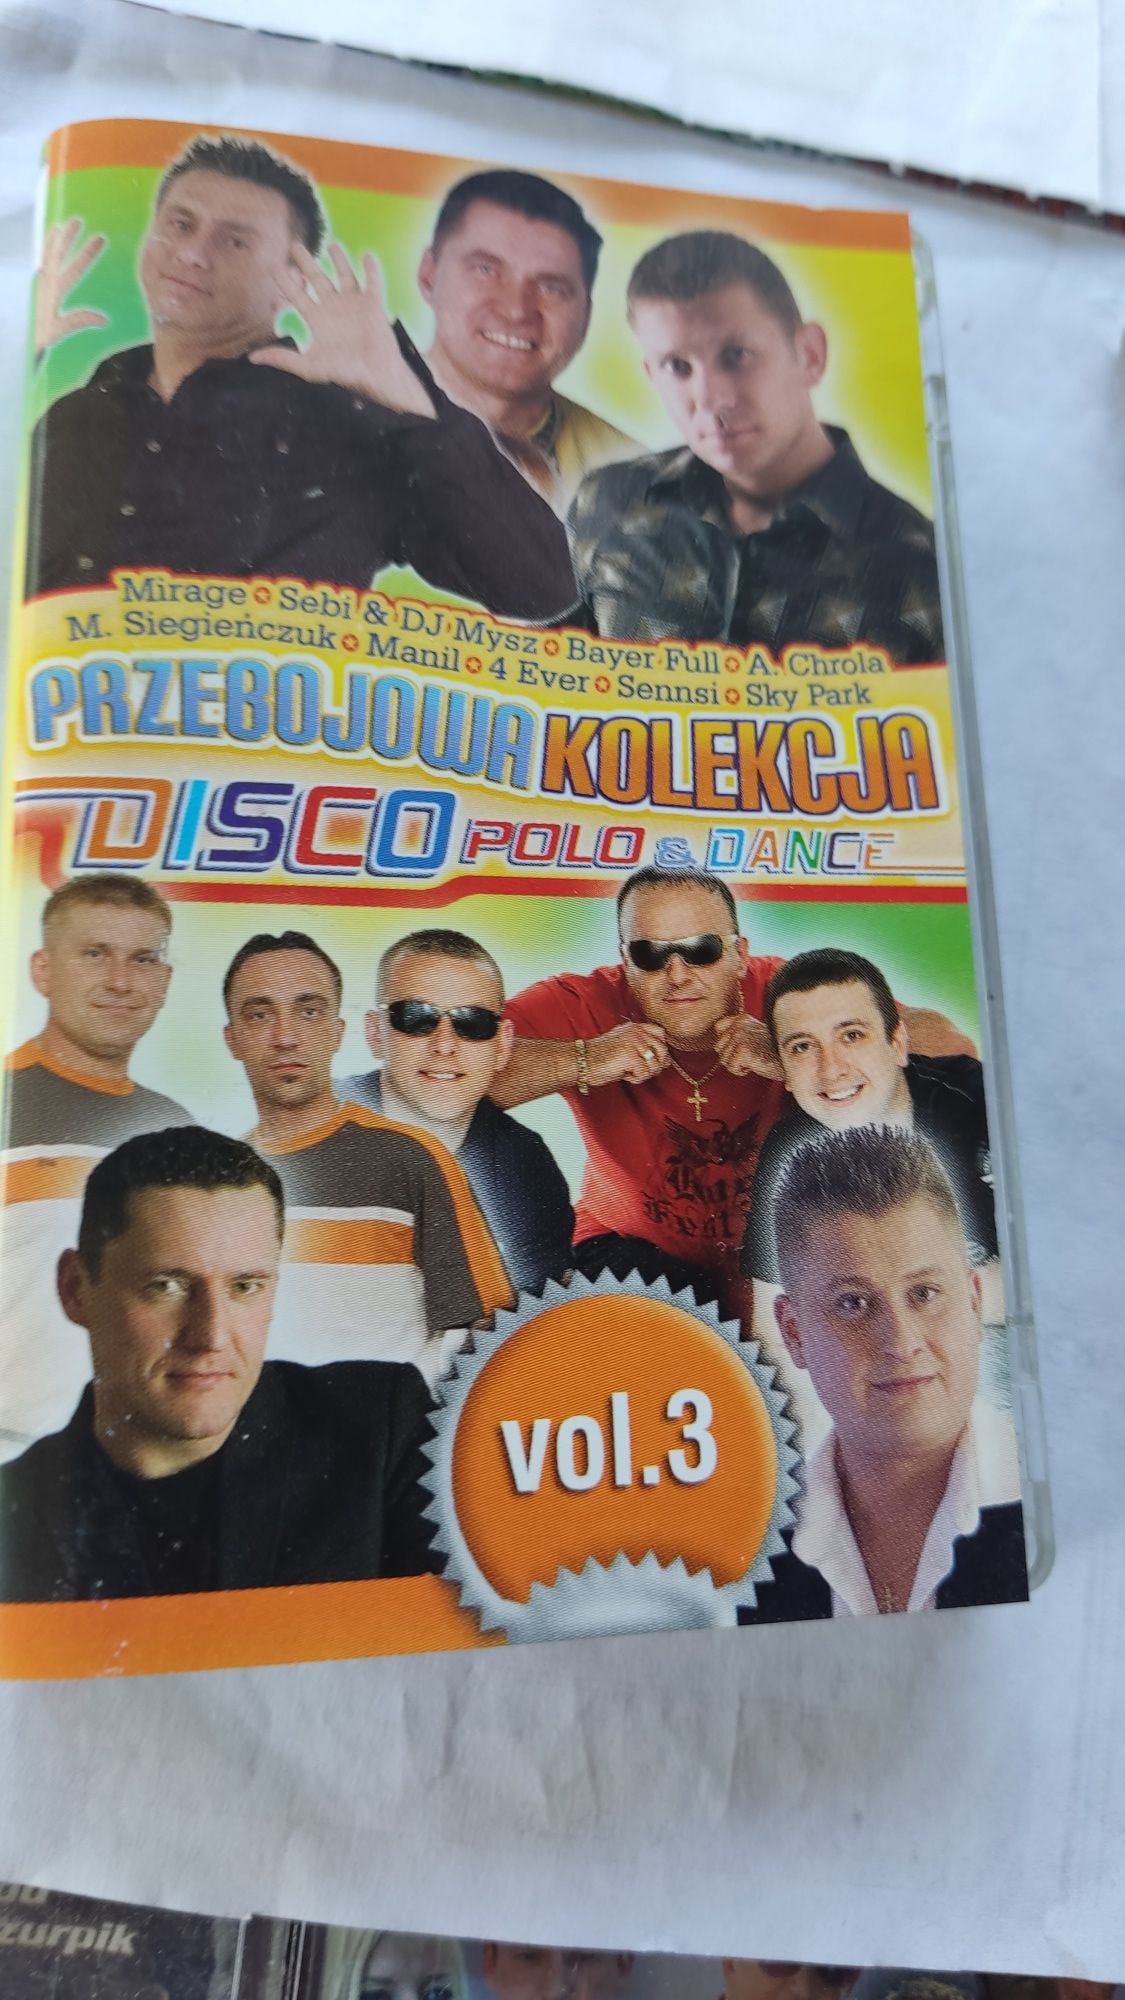 Przebojowa kolekcja Disco polo i dance vol 3